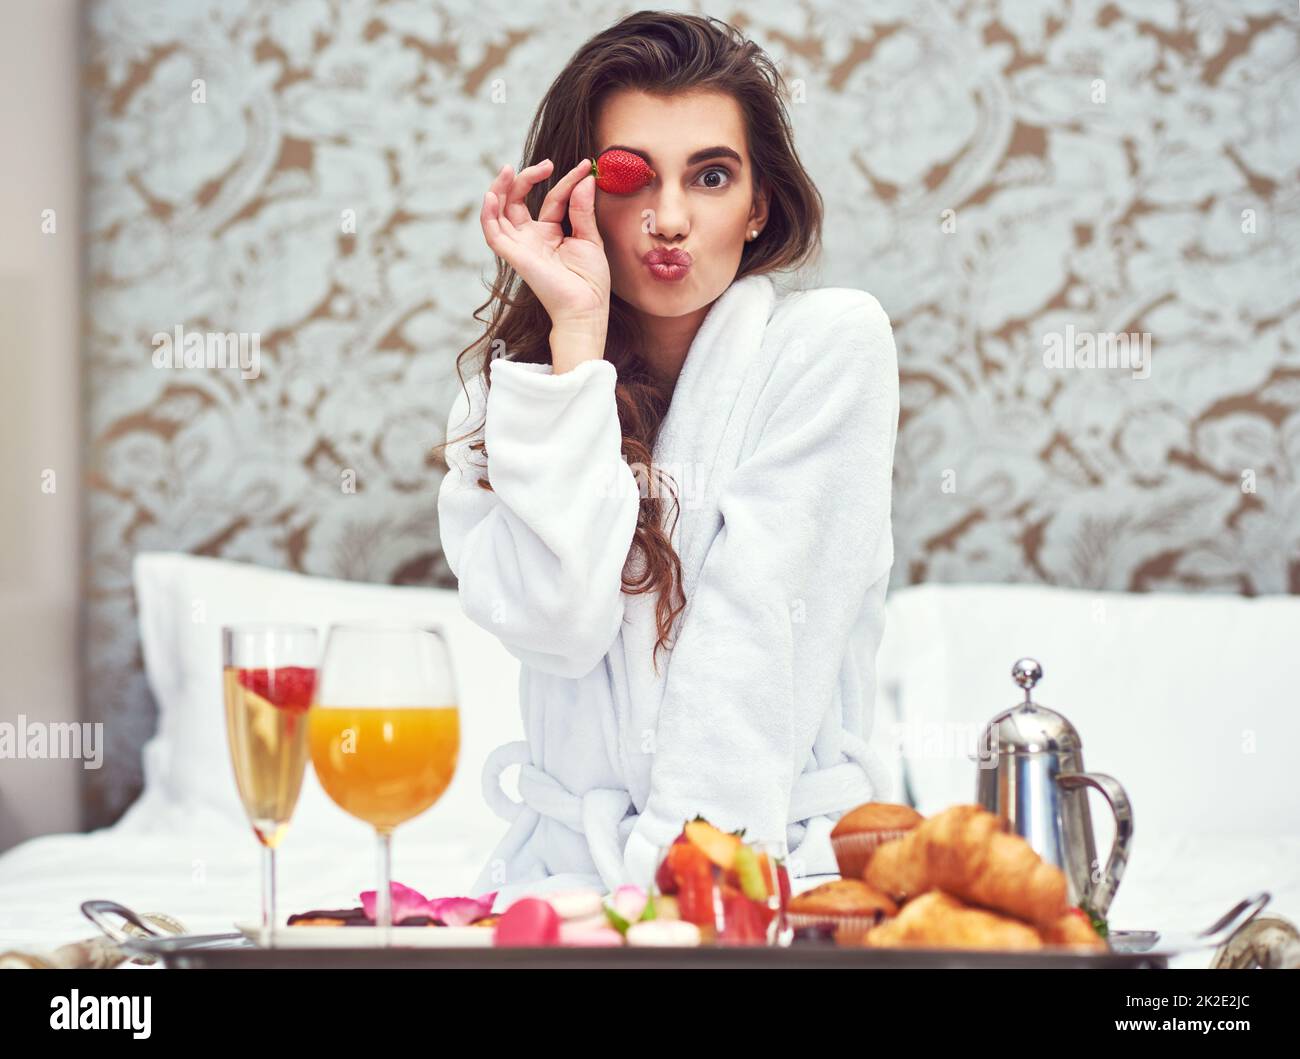 Genießen Sie ein Frühstück, das Ihnen einen Schönheitsschub verleiht. Aufnahme einer attraktiven jungen Frau, die in ihrem Zimmer ein luxuriöses Frühstück genießt. Stockfoto